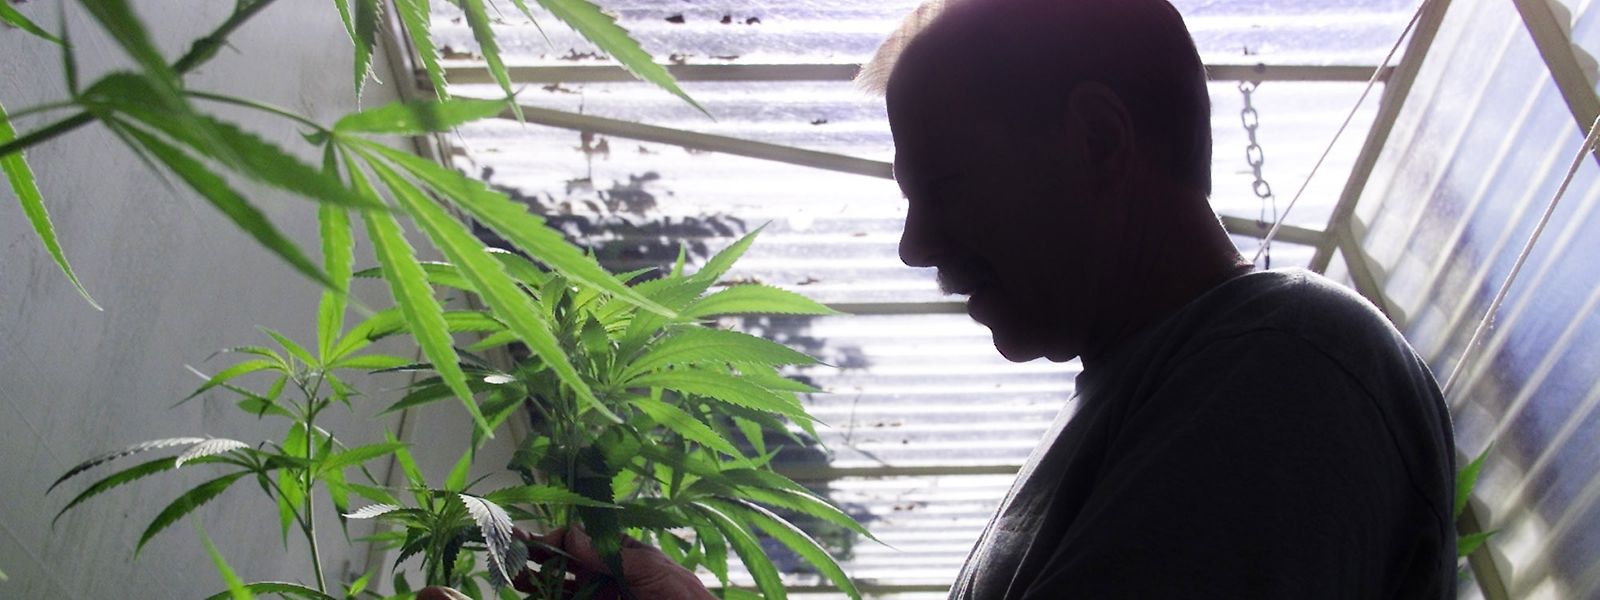 La consommation personnelle de cannabis sera donc autorisée à la maison et une personne majeure pourra librement cultiver jusqu’à 4 plantes de cannabis.